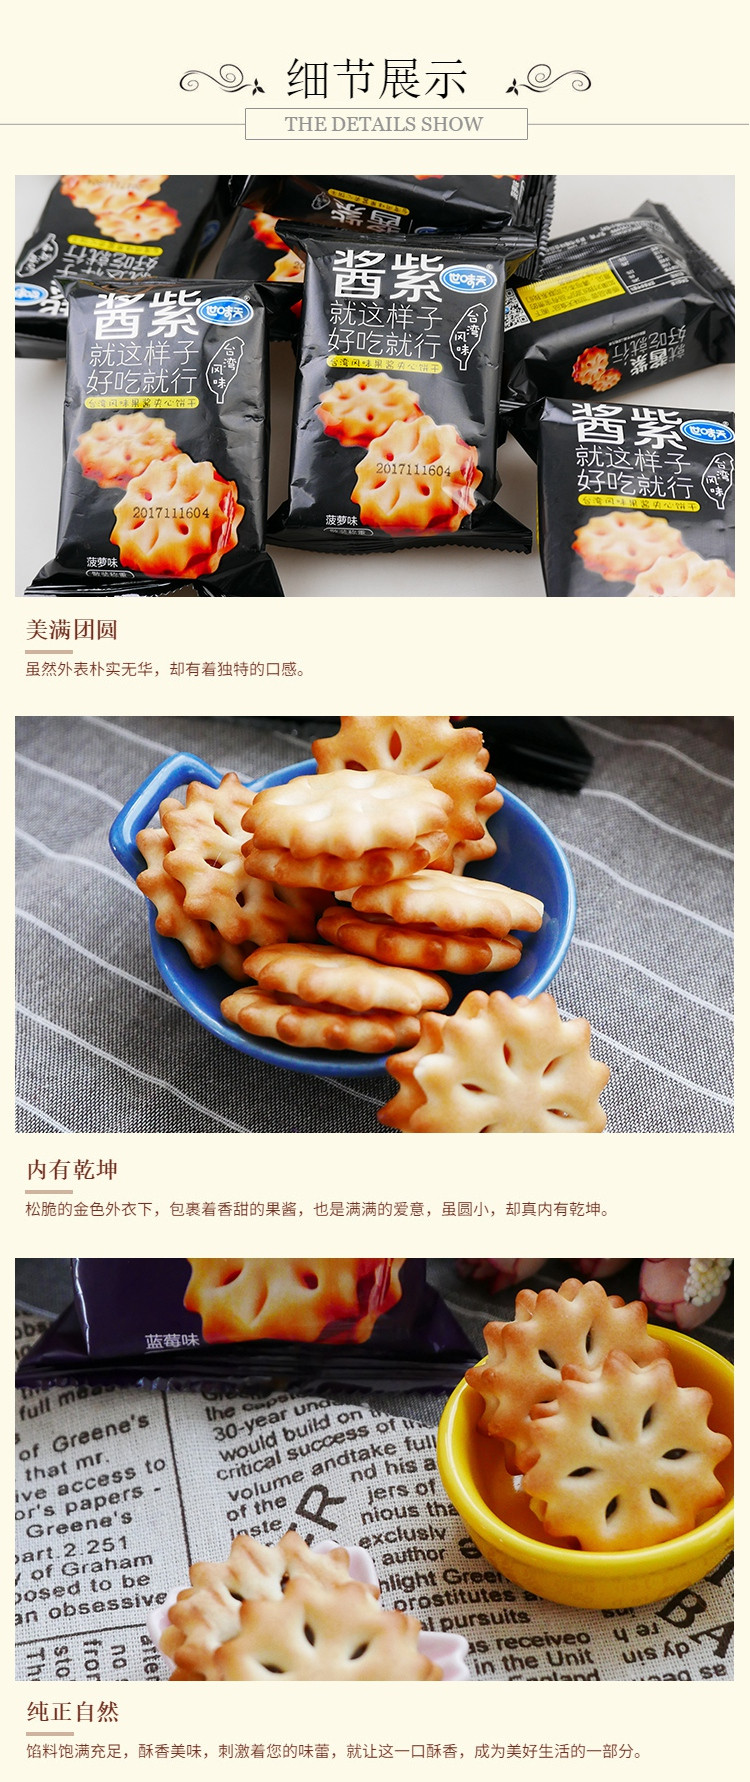 世味天 酱紫台湾风味夹心饼干 菠萝味/蓝莓味可选 10袋装 称重食品（450克±10克）